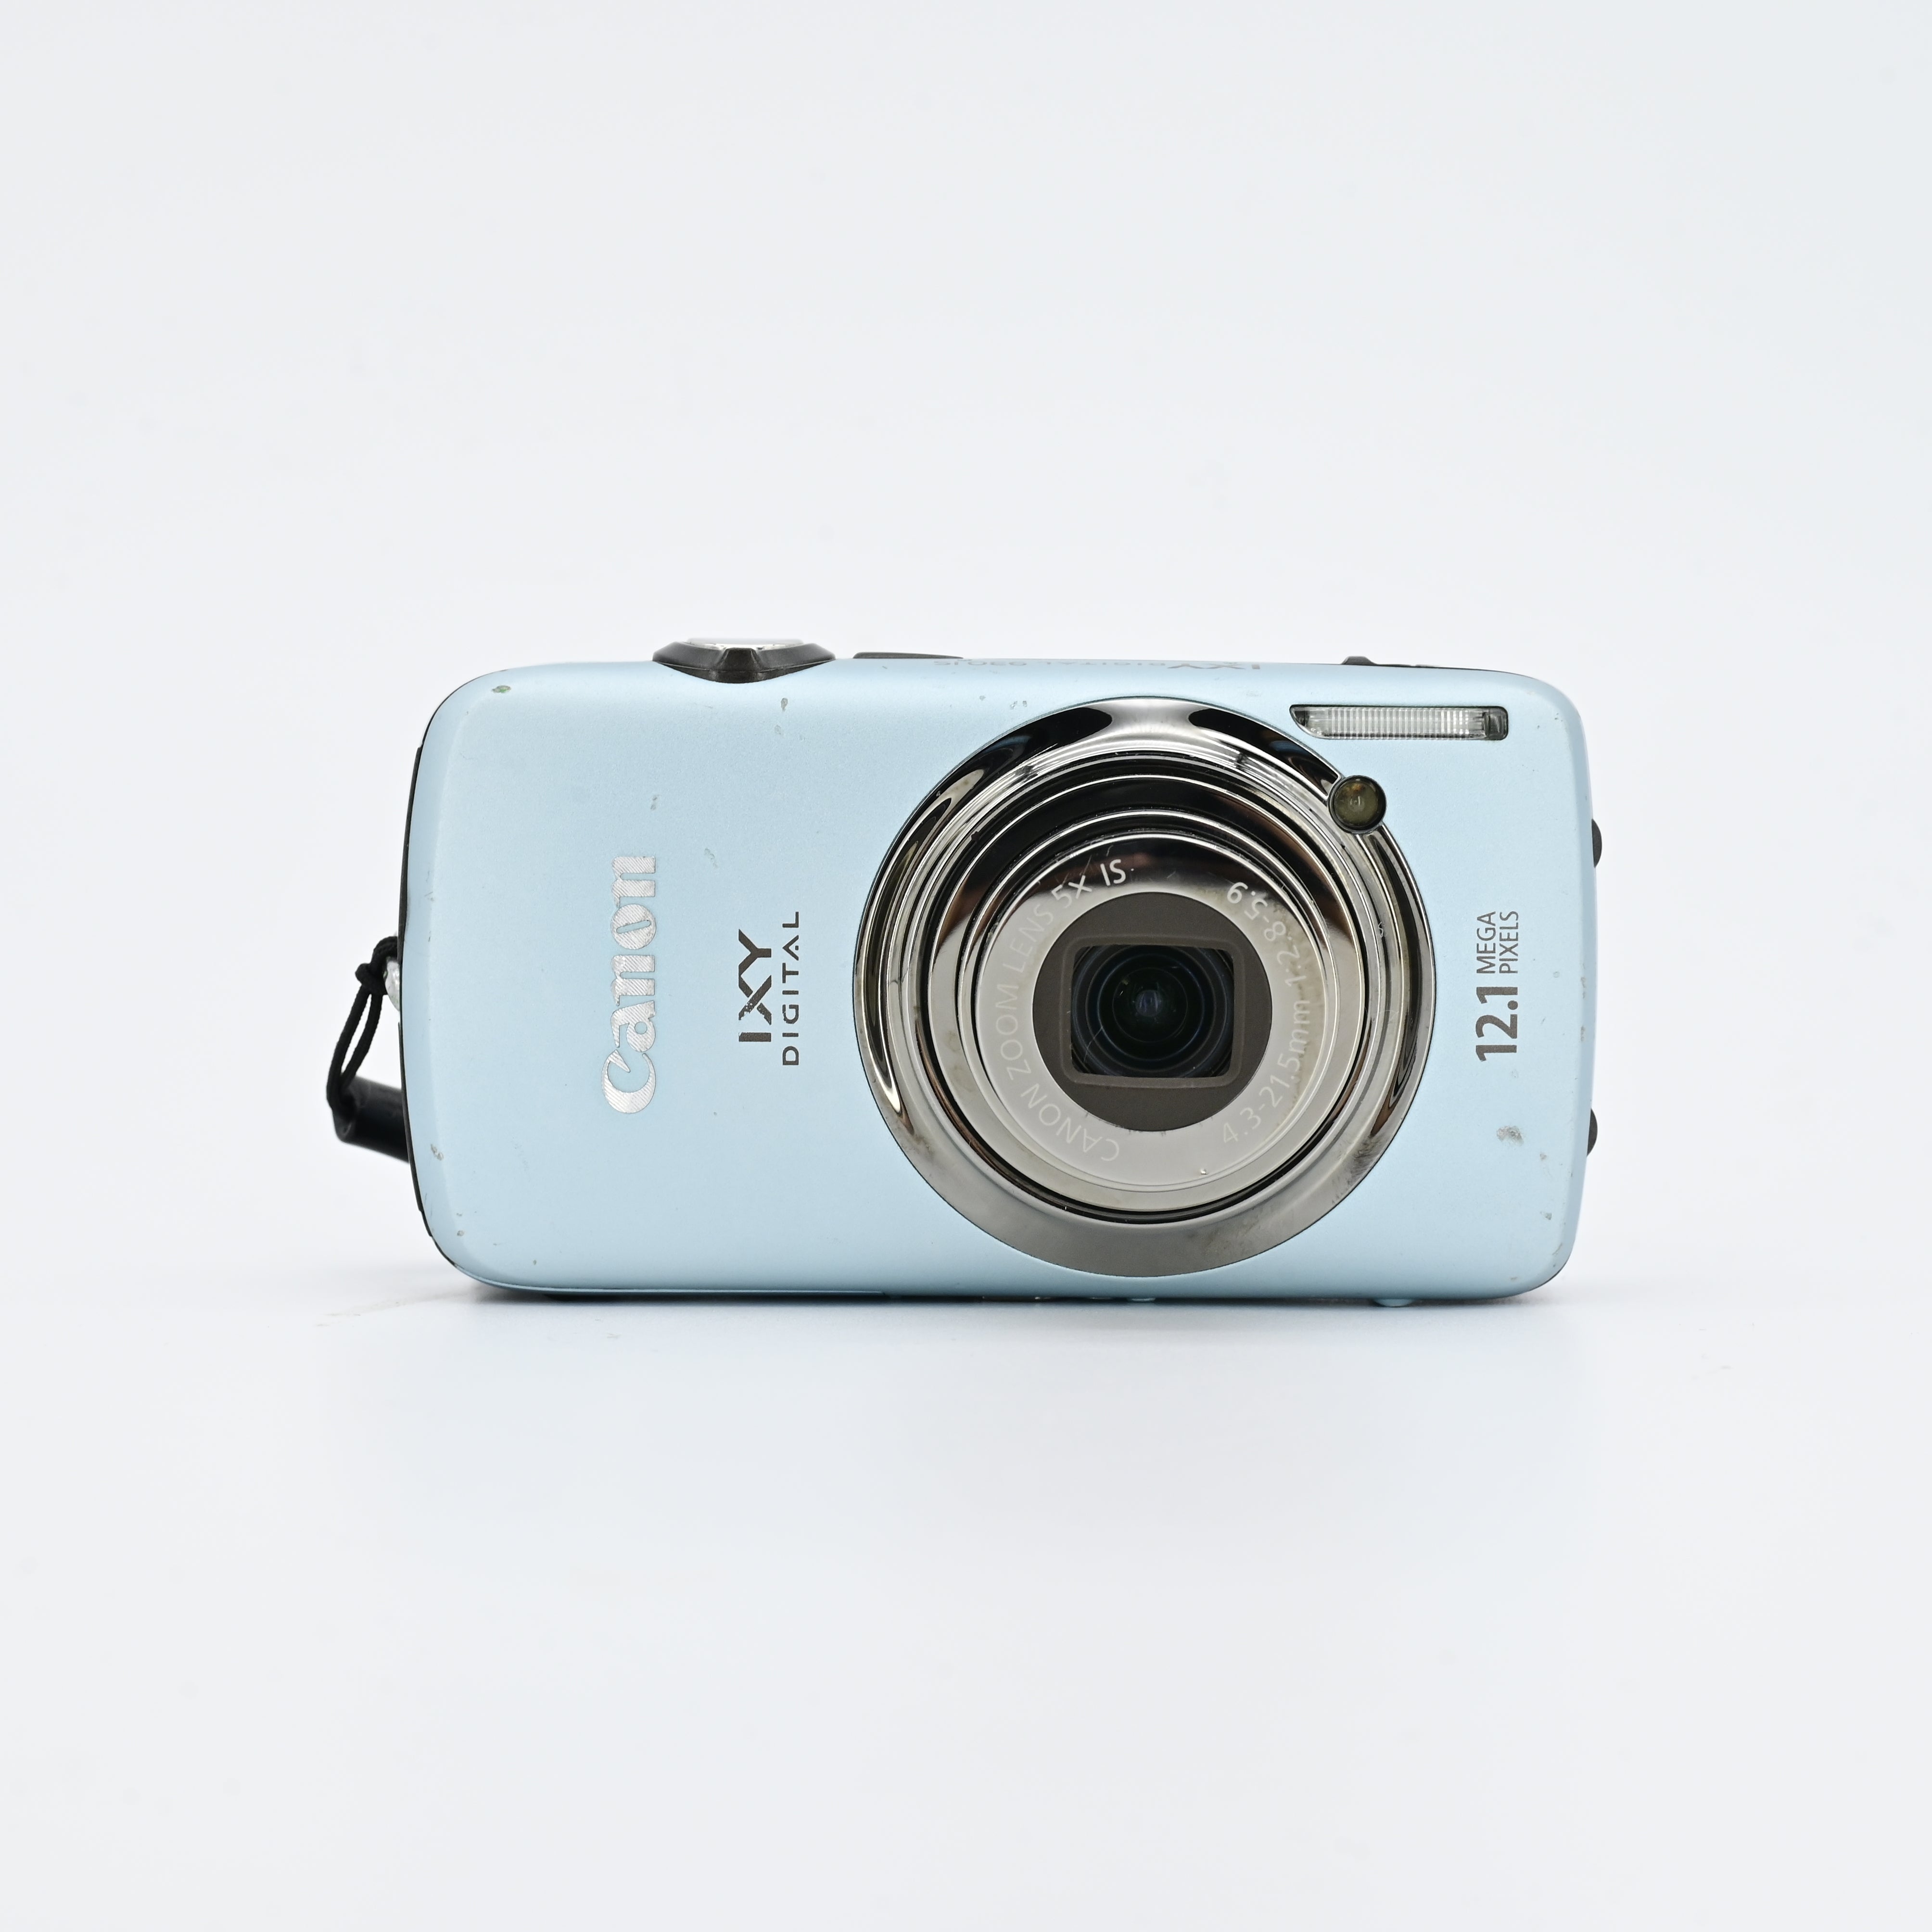 CANON IXY DIGITAL 930IS 充電器付き - デジタルカメラ